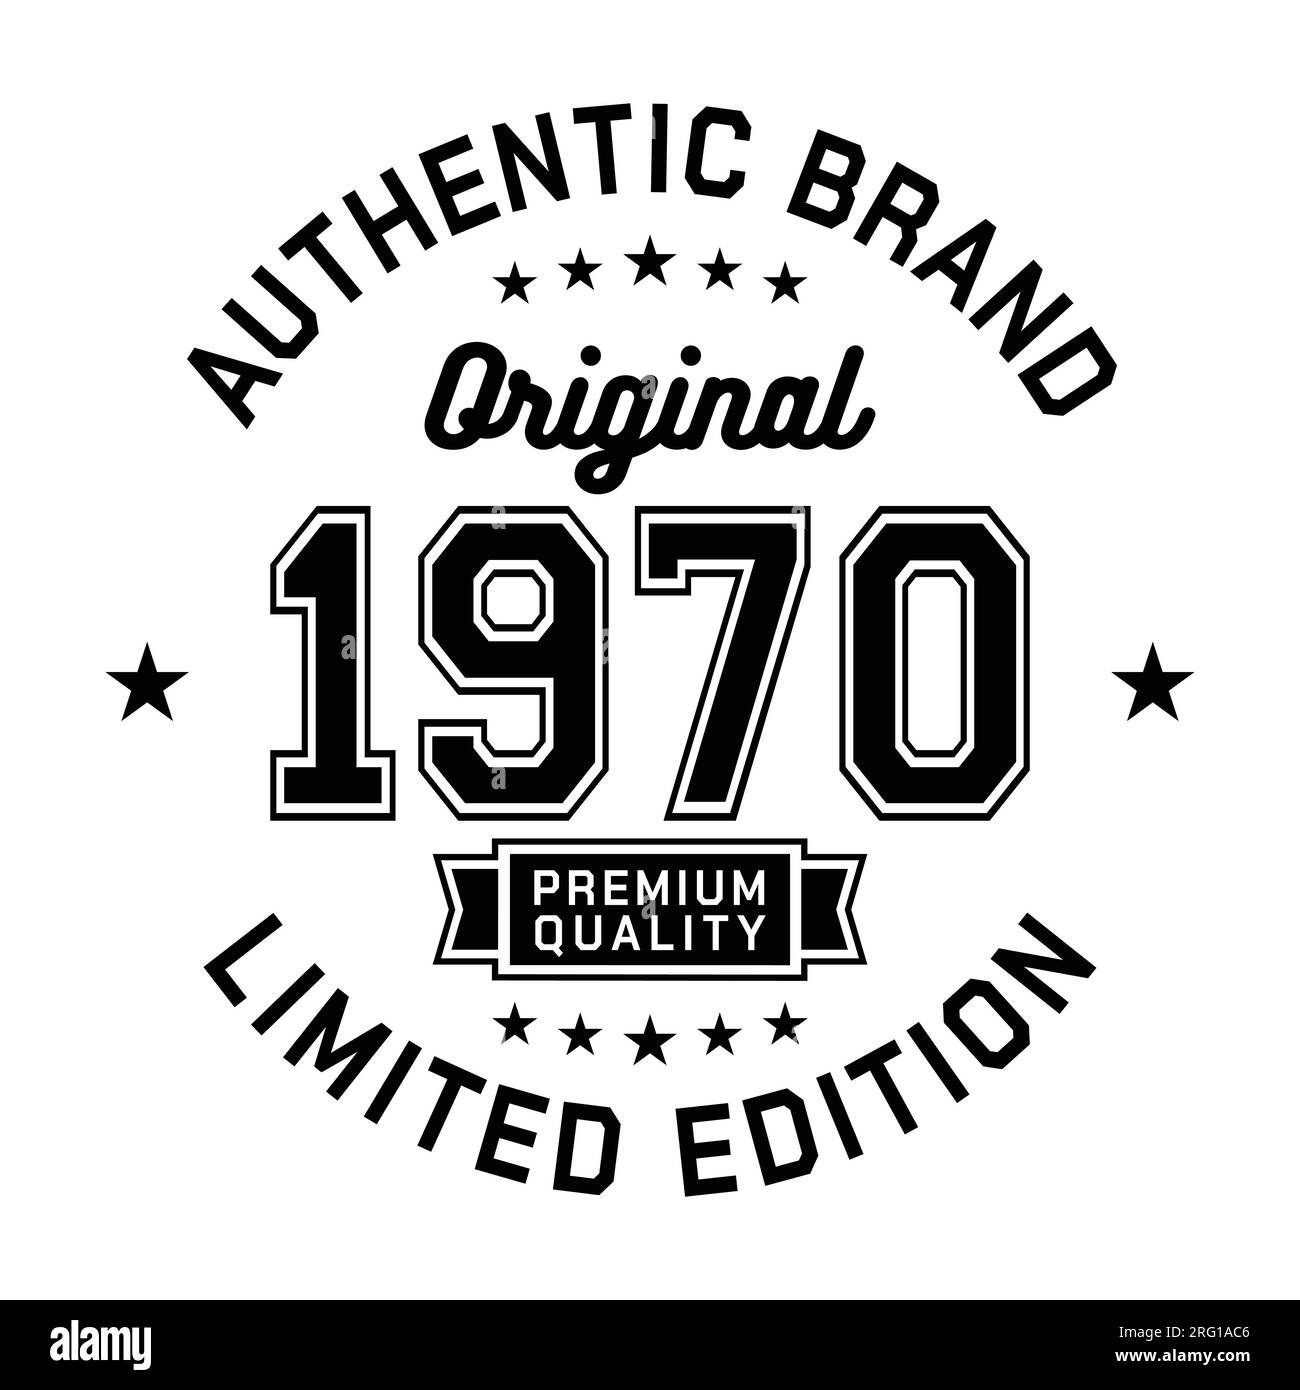 1970 authentische Marke. Modisches Bekleidungsdesign. Grafikdesign für T-Shirt. Vektor und Illustration. Stock Vektor